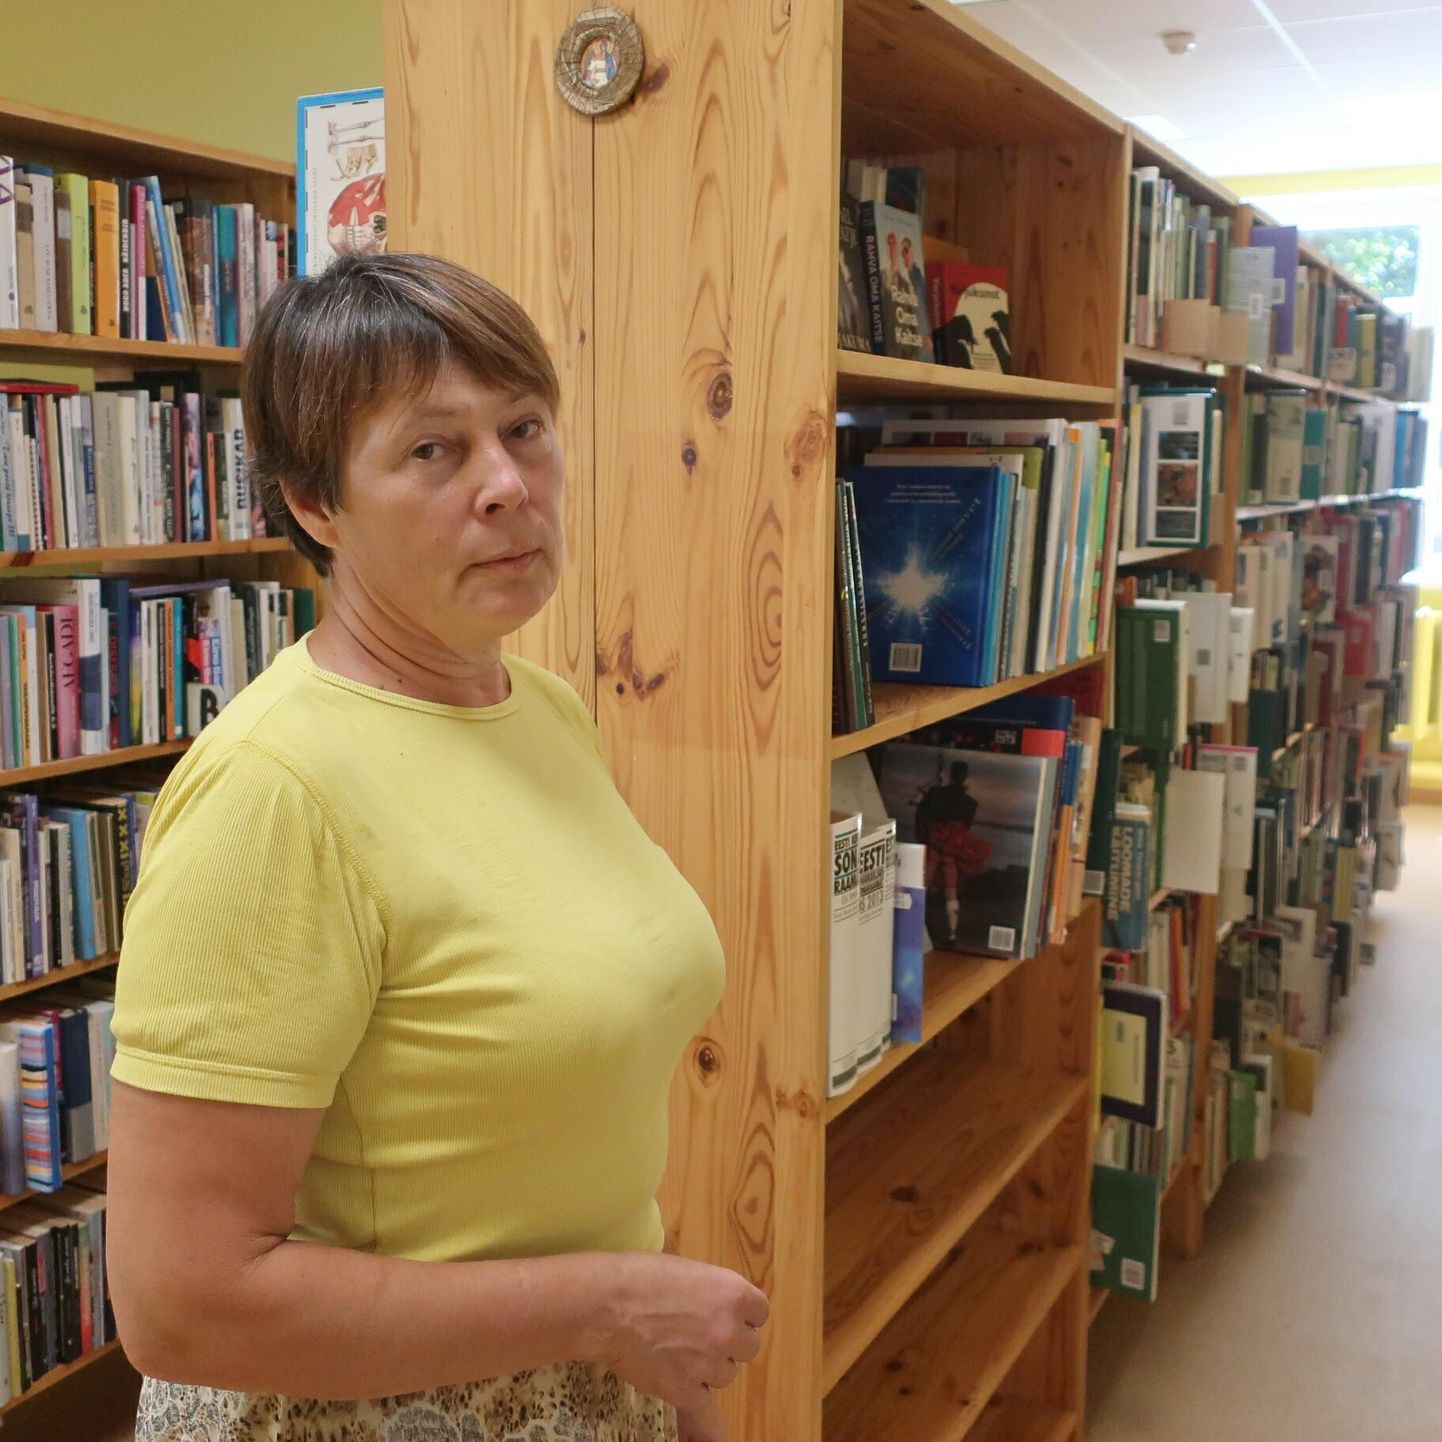 Põlgaste raamatukogu-külakeskuse perenaise Irina Kruusla tõdemusel jääb üksnes akende kinnitoppimisest väheseks, vältimaks soojuskadusid.